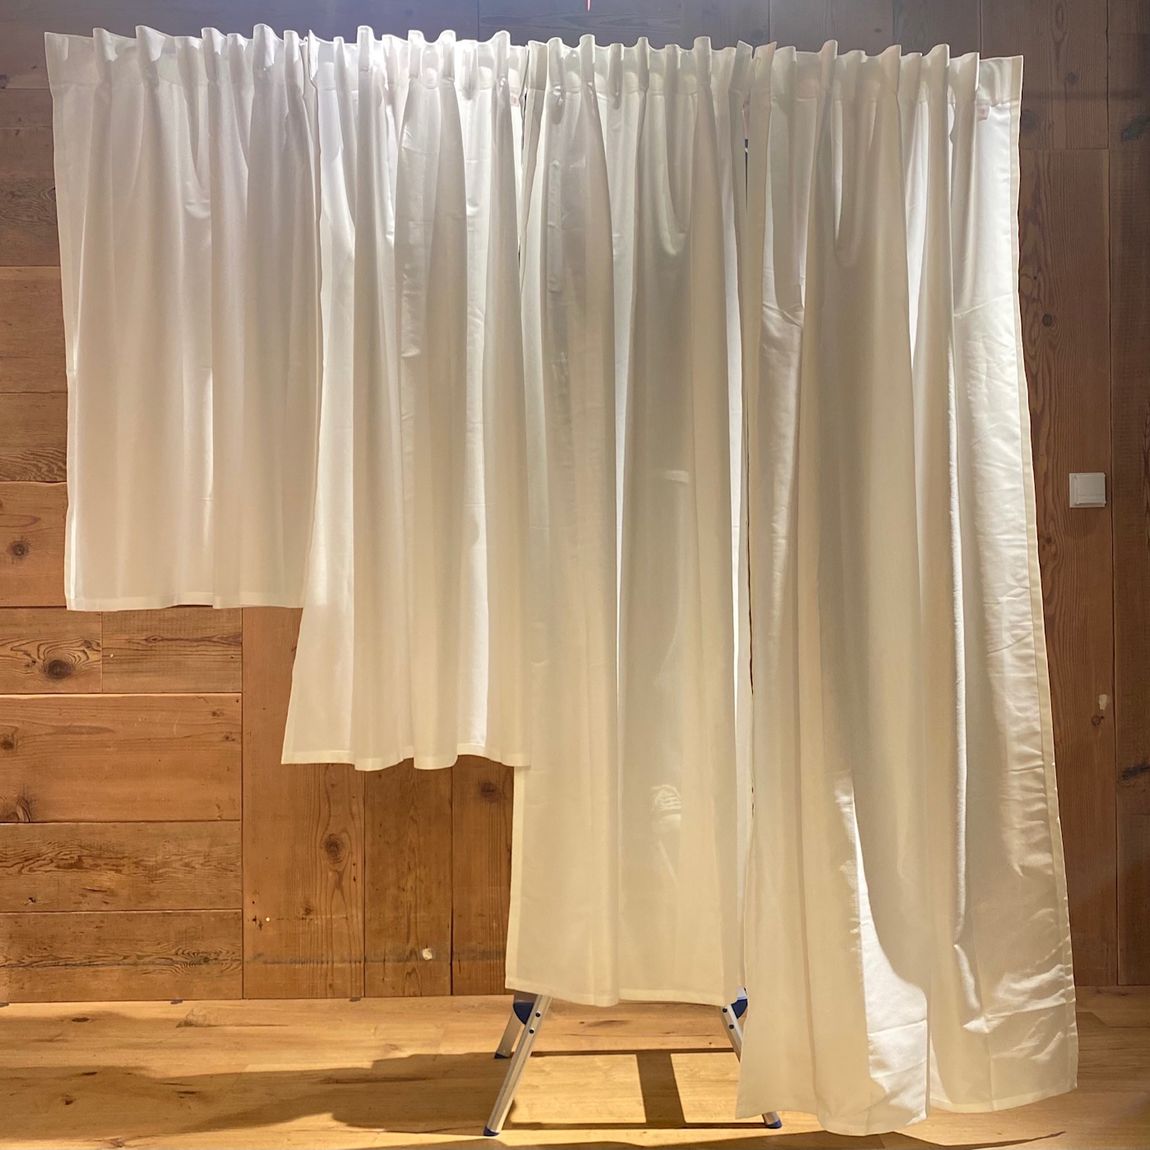 【銀座】新しいカーテンが出ました｜5Fカーテン売場